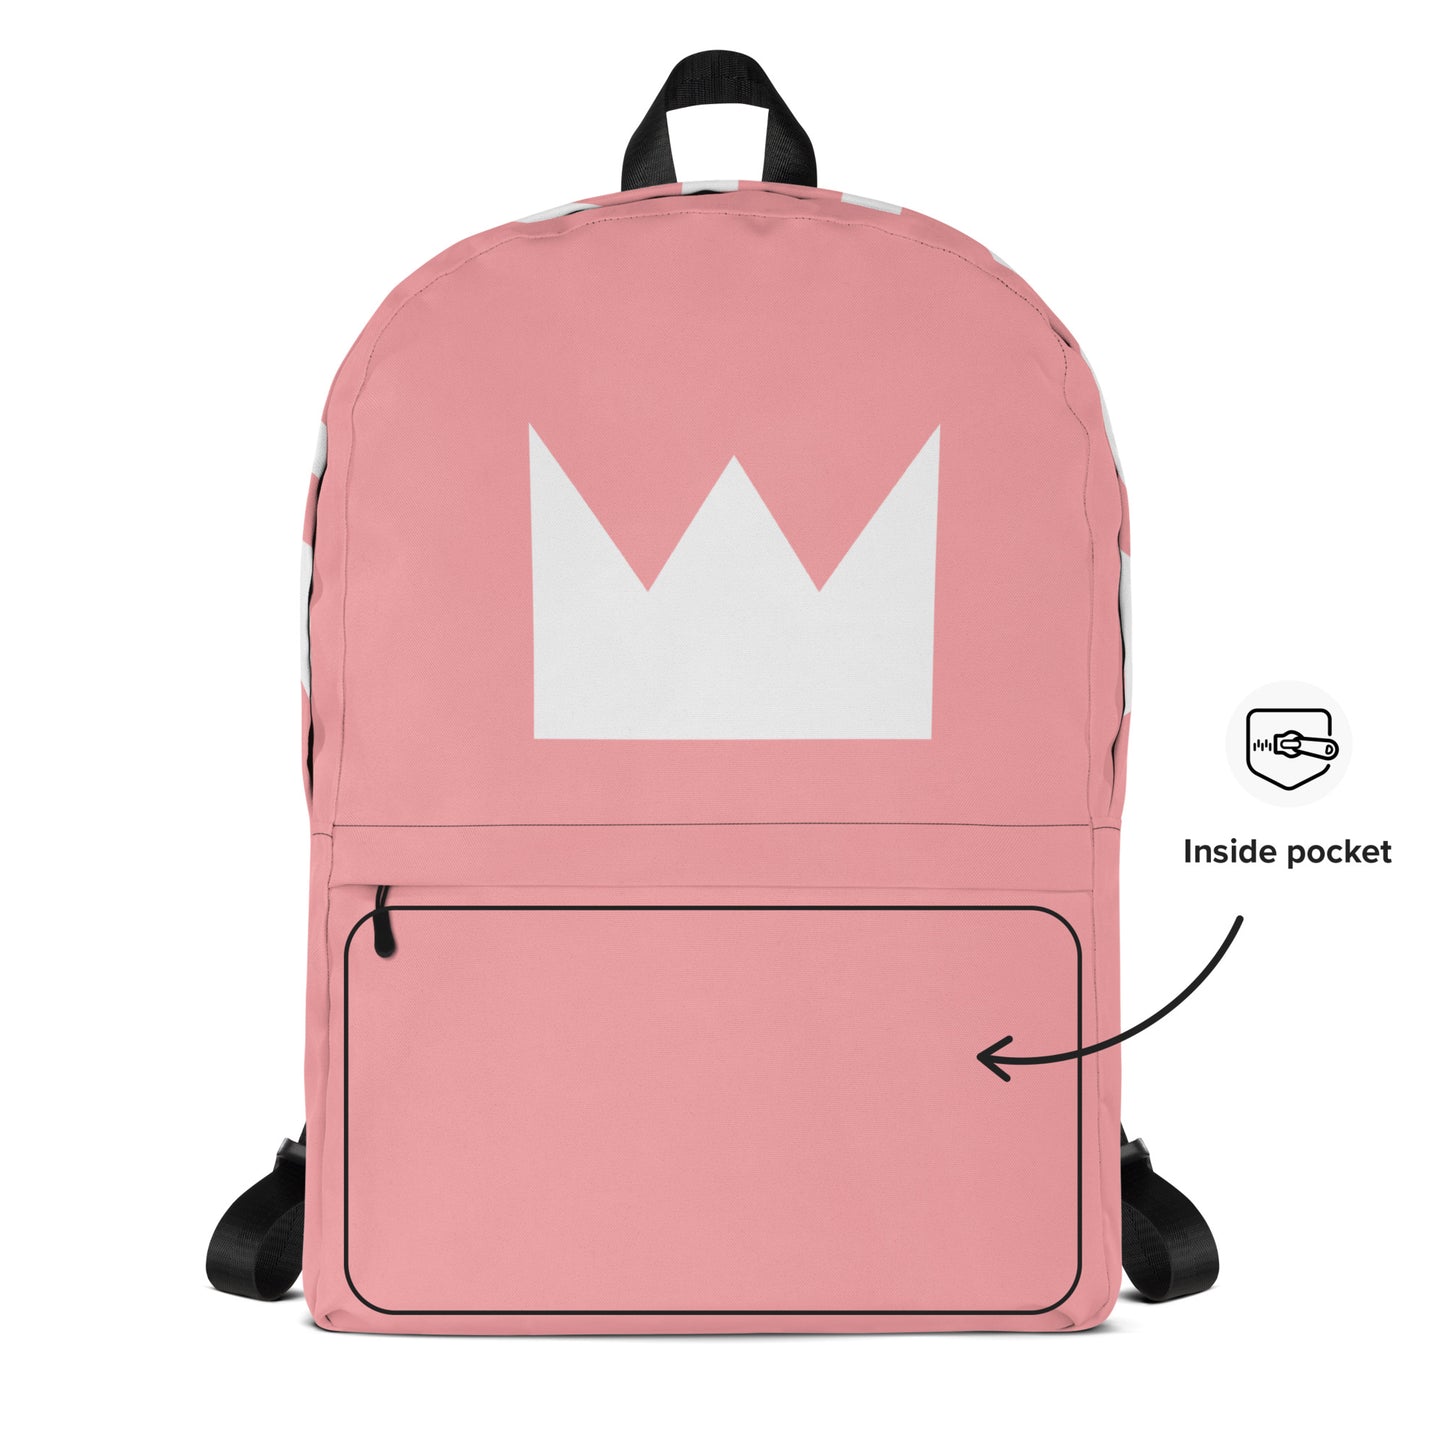 21 KYNGZ Pink Backpack